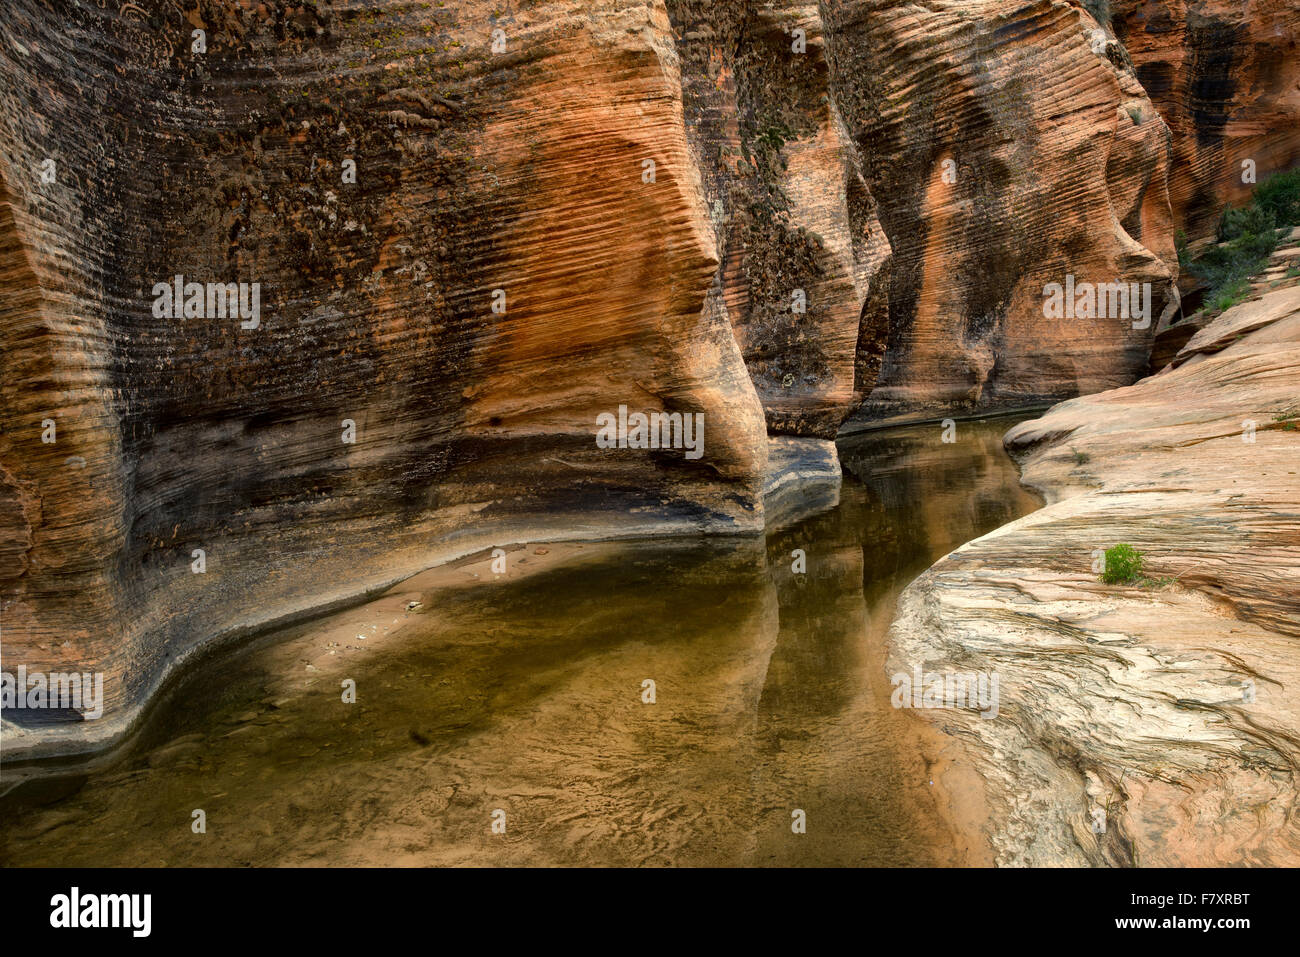 Le lit de saison avec de l'eau et la réflexion. Zion National Park, UT Banque D'Images